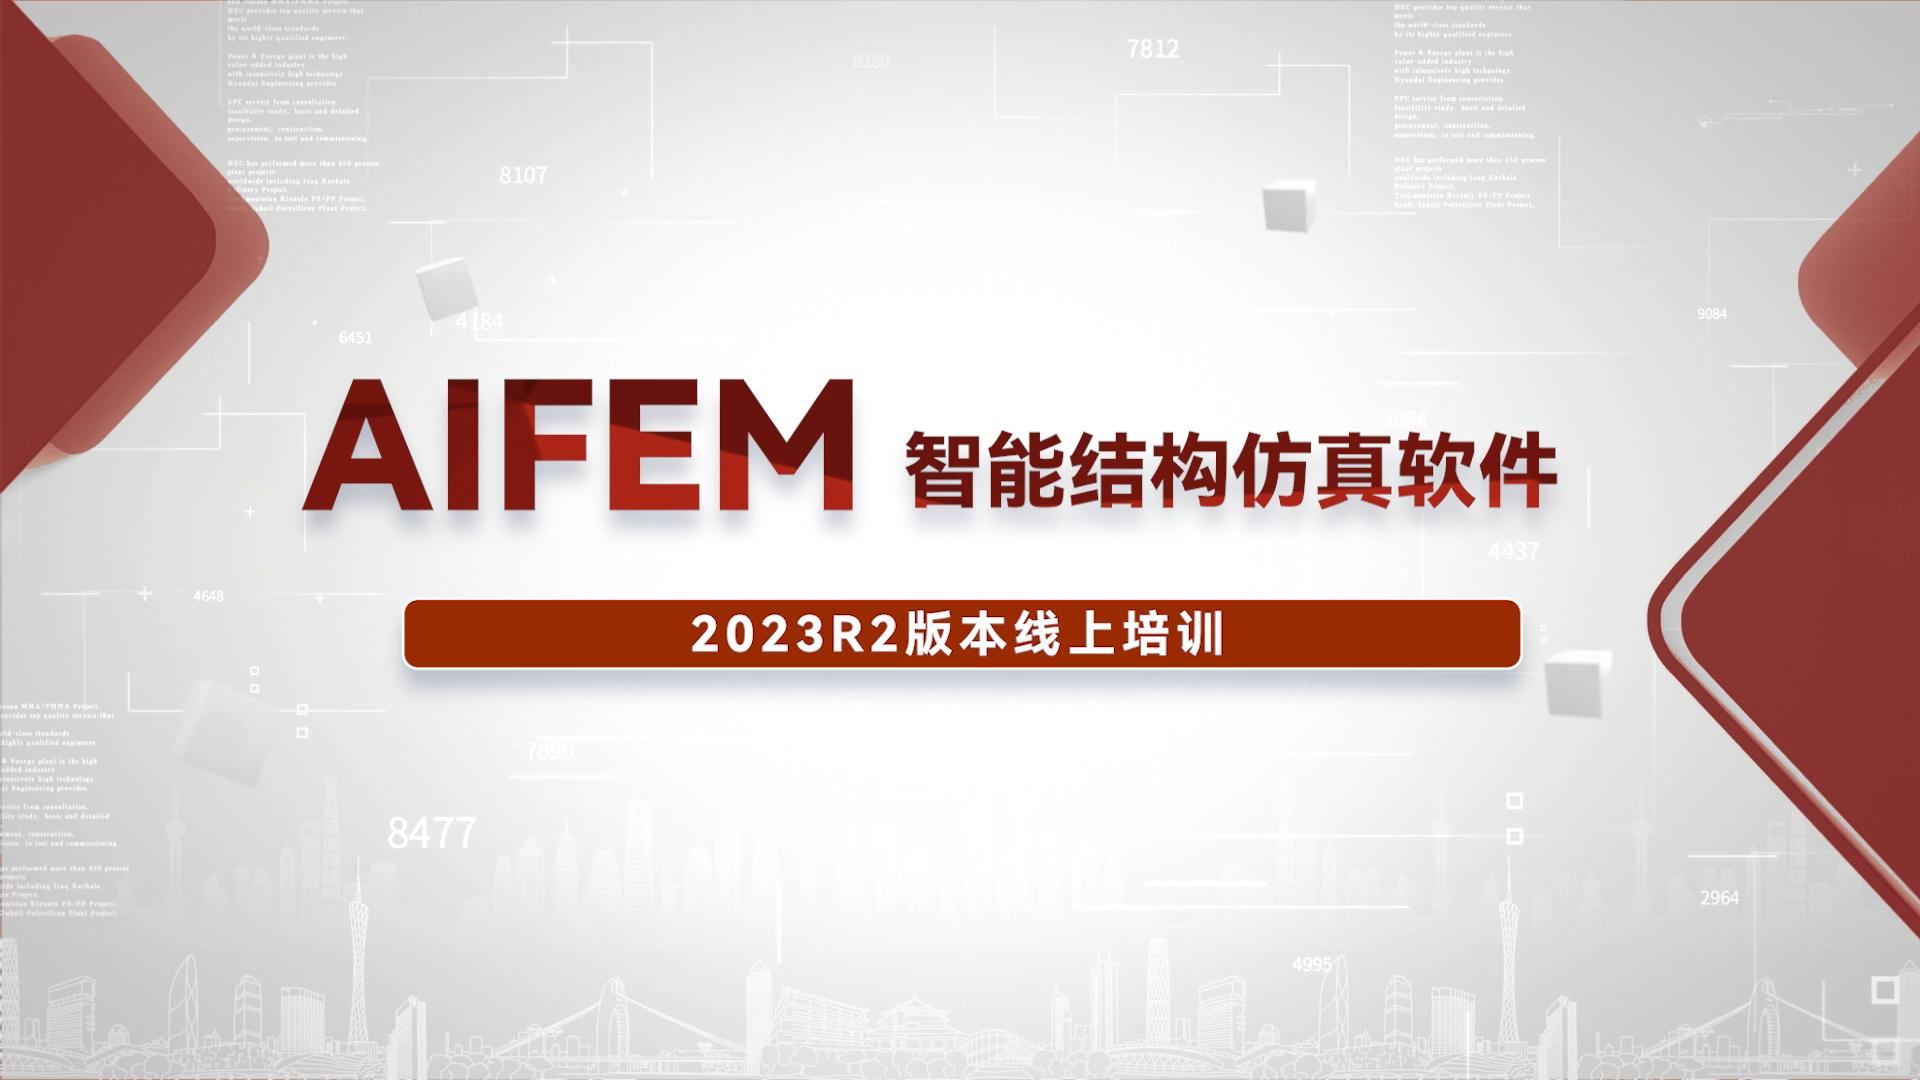 智能结构仿真软件AIFEM 2023R2线上培训